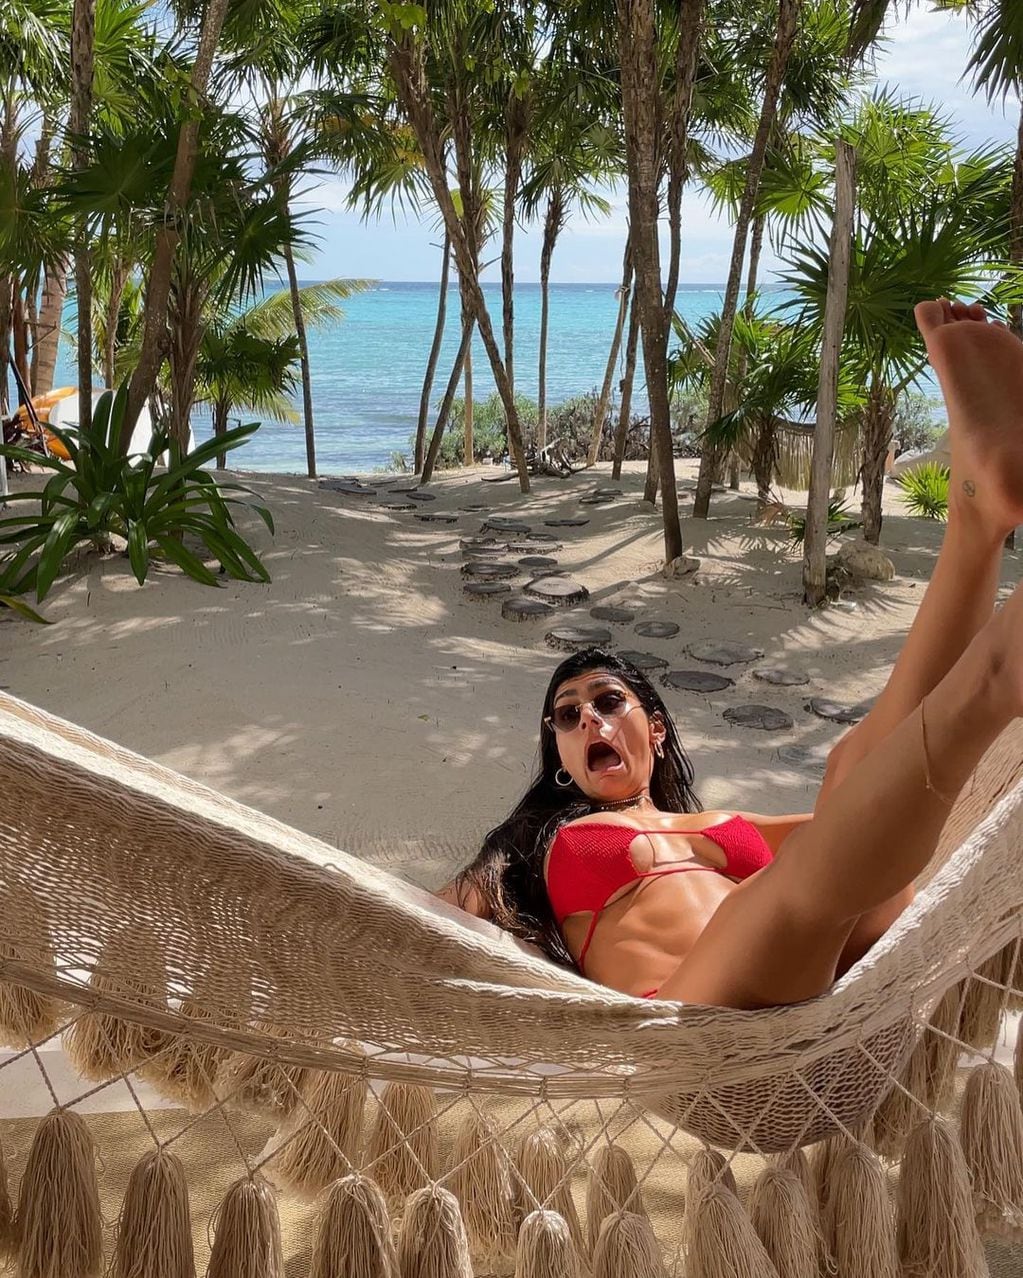 Mia Khalifa y la foto con su bikini puesta "al revés".